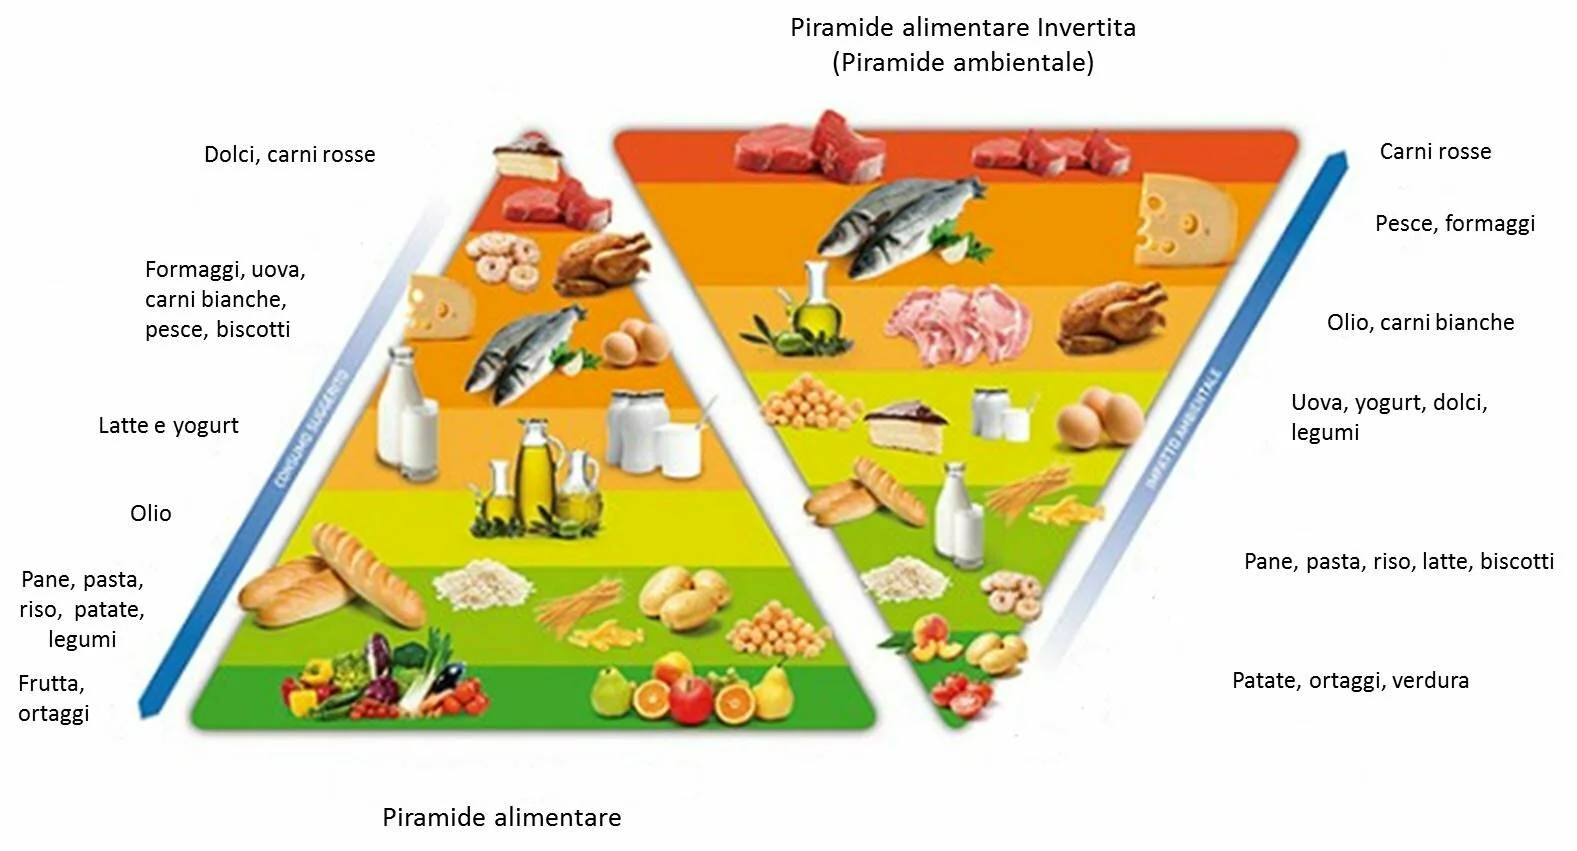 Piramide alimentare e piramide ambientale a confronto